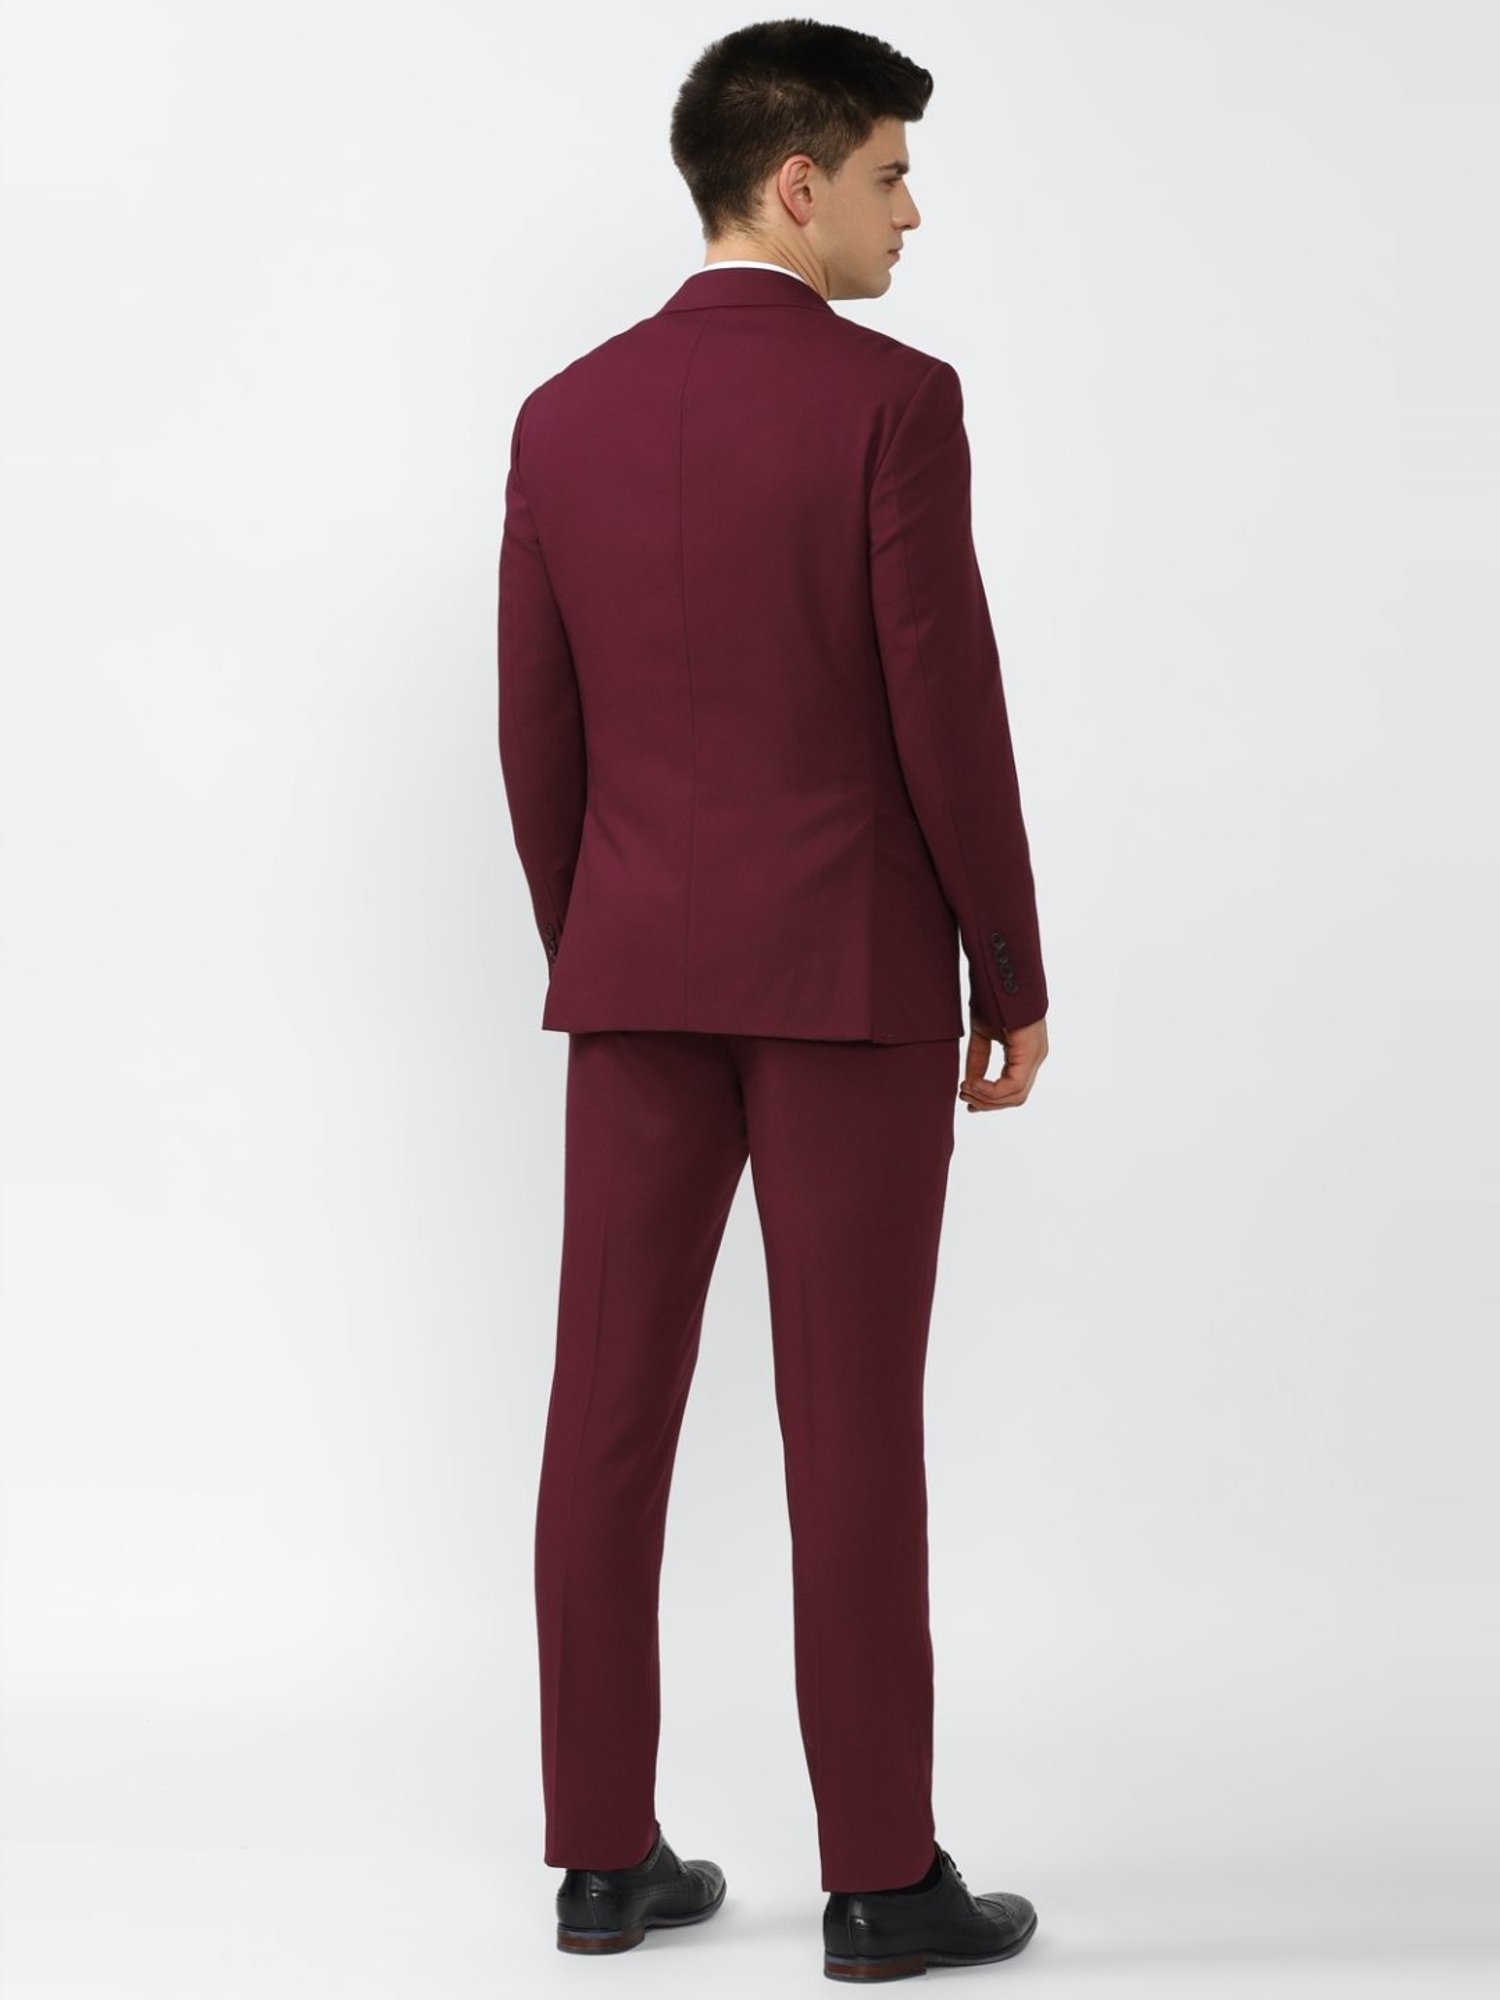 YOUNG  Bordeaux red suit trousers  Slim fit  Shop Varteks dd